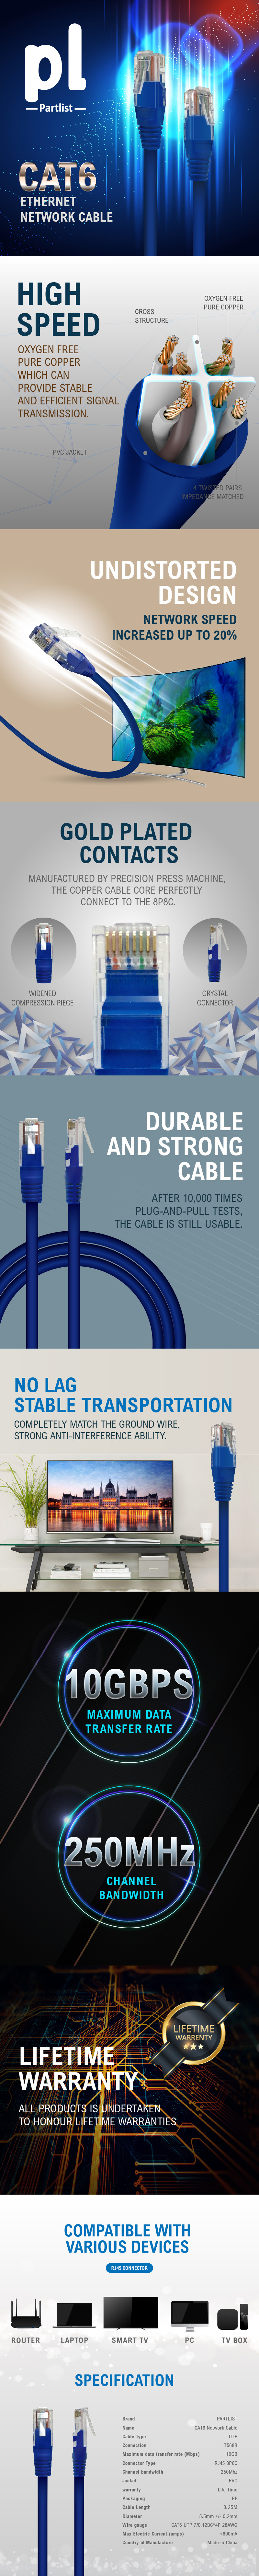 Network-Cables-Cablelist-Cat6-UTP-RJ45-Ethernet-0-25m-Cable-Blue-2